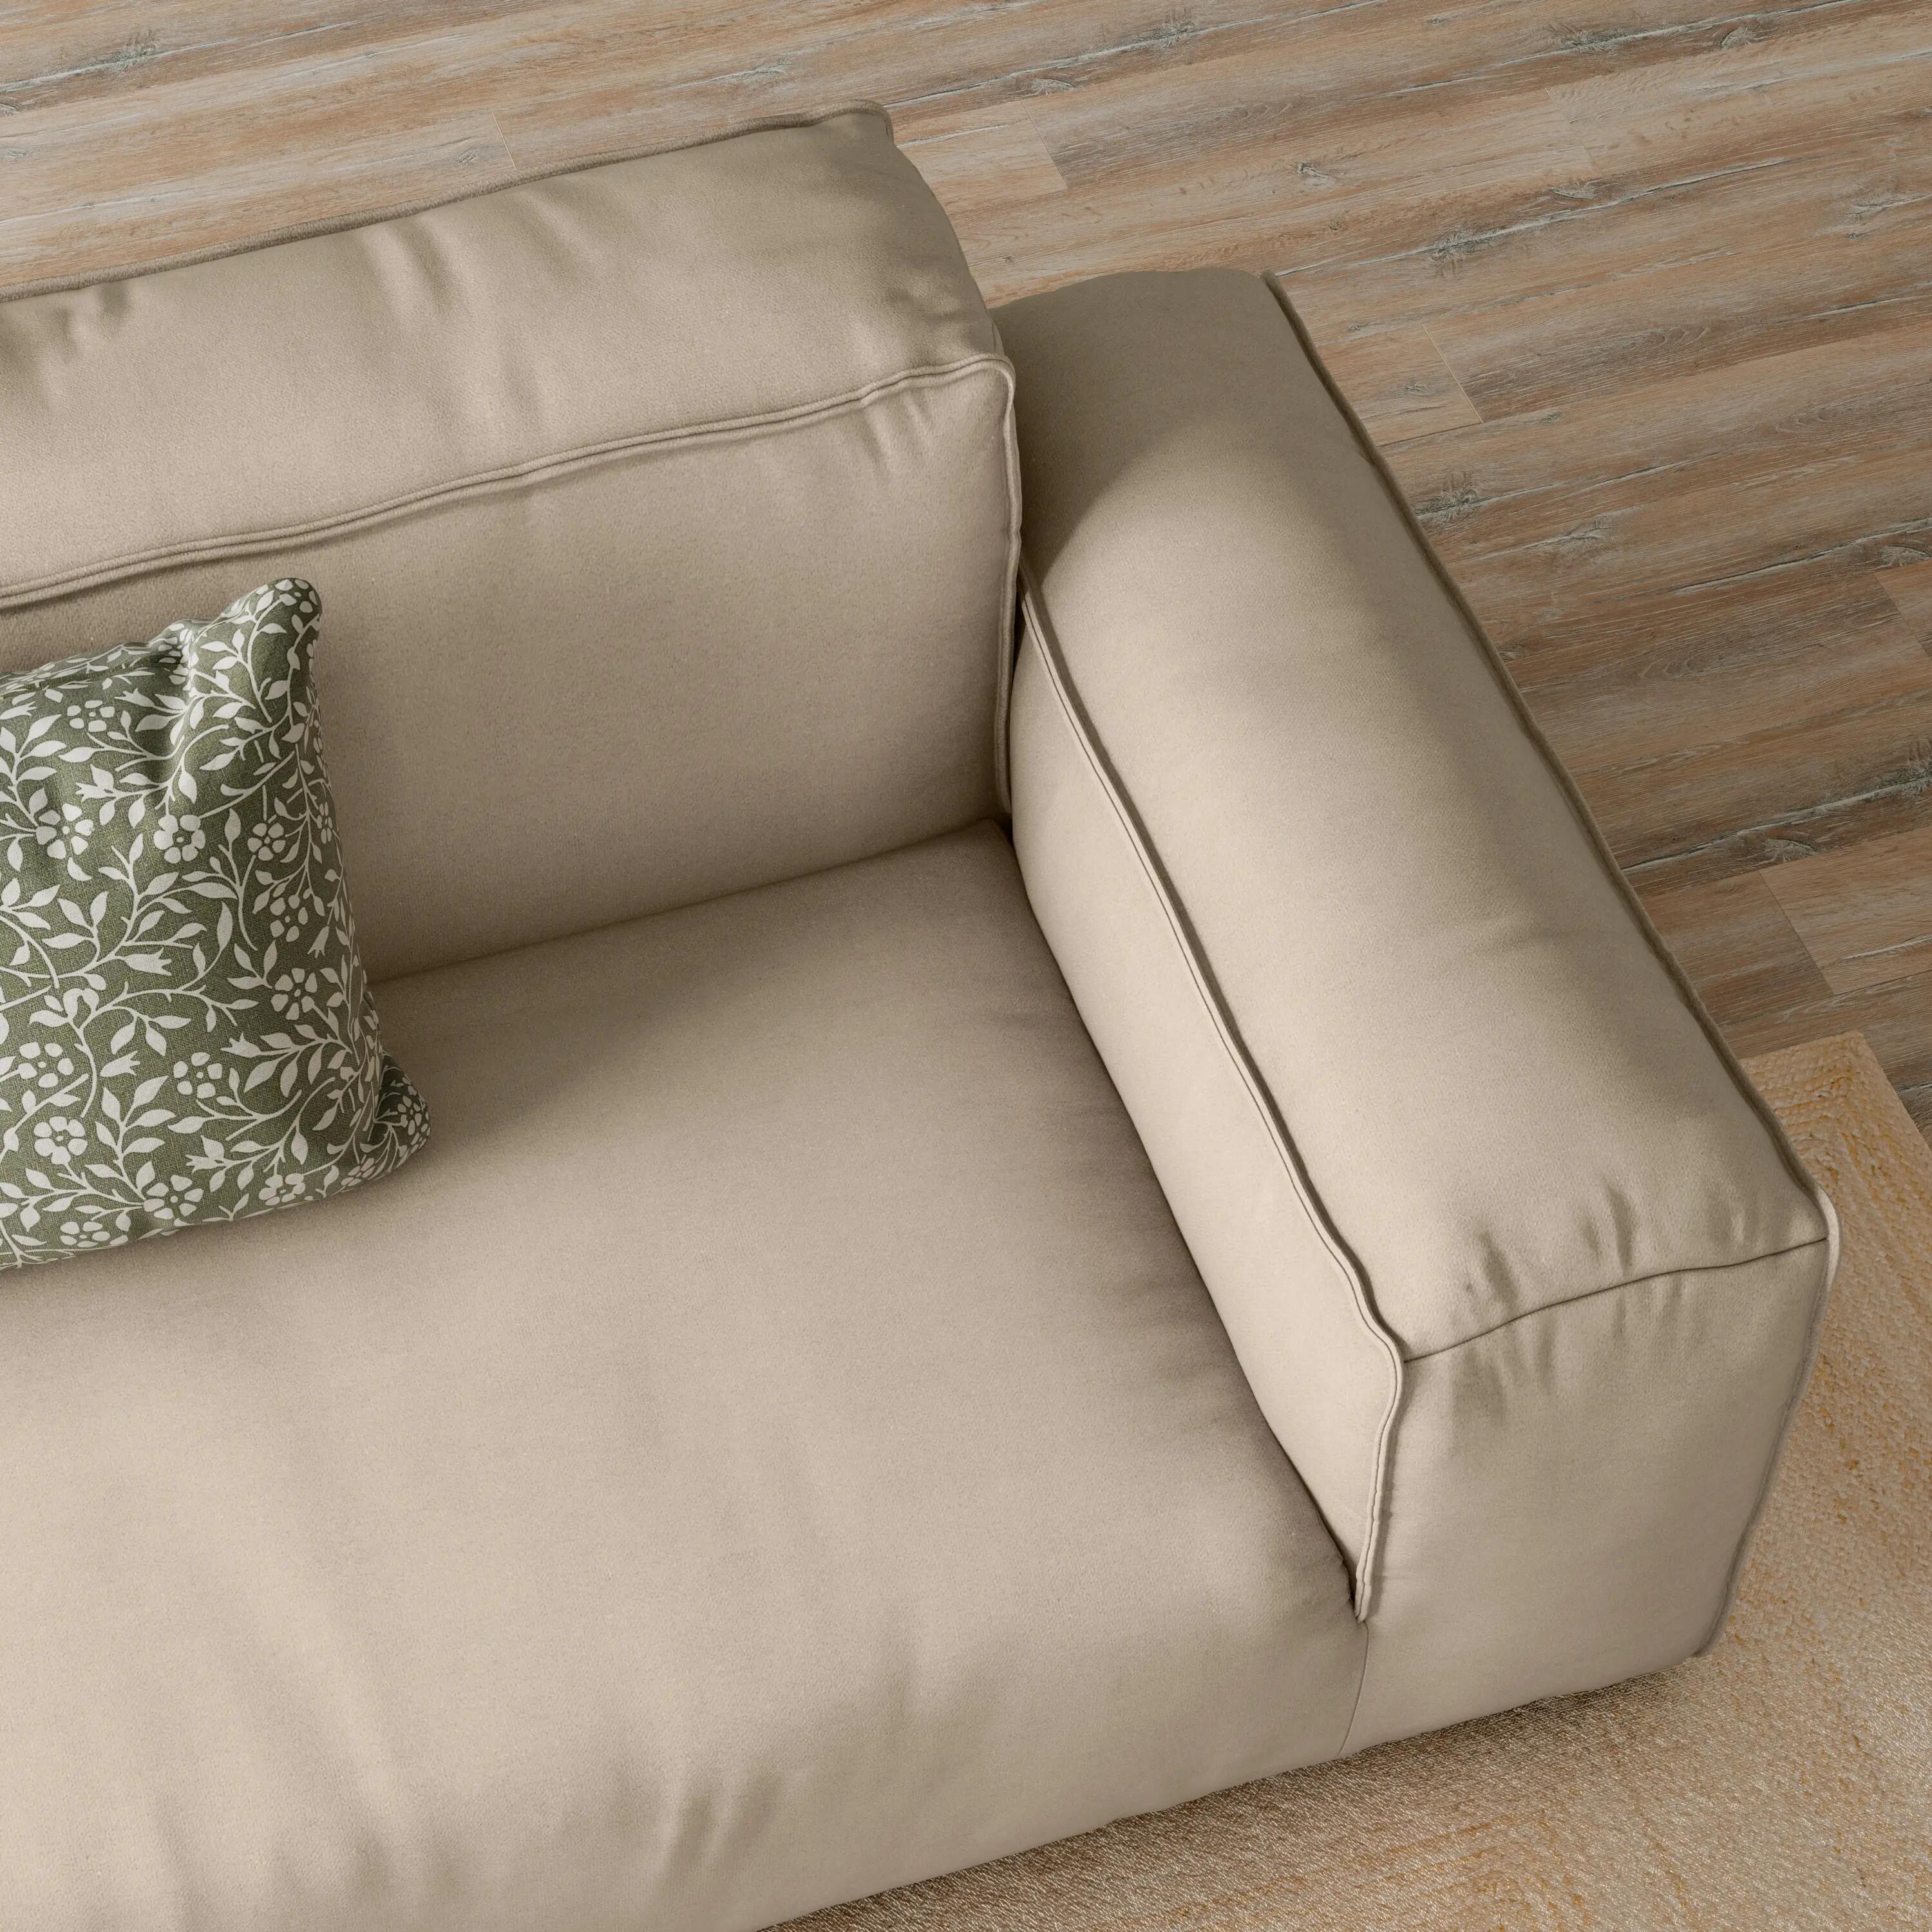 Fundas cubre sofá | Leroy Merlin